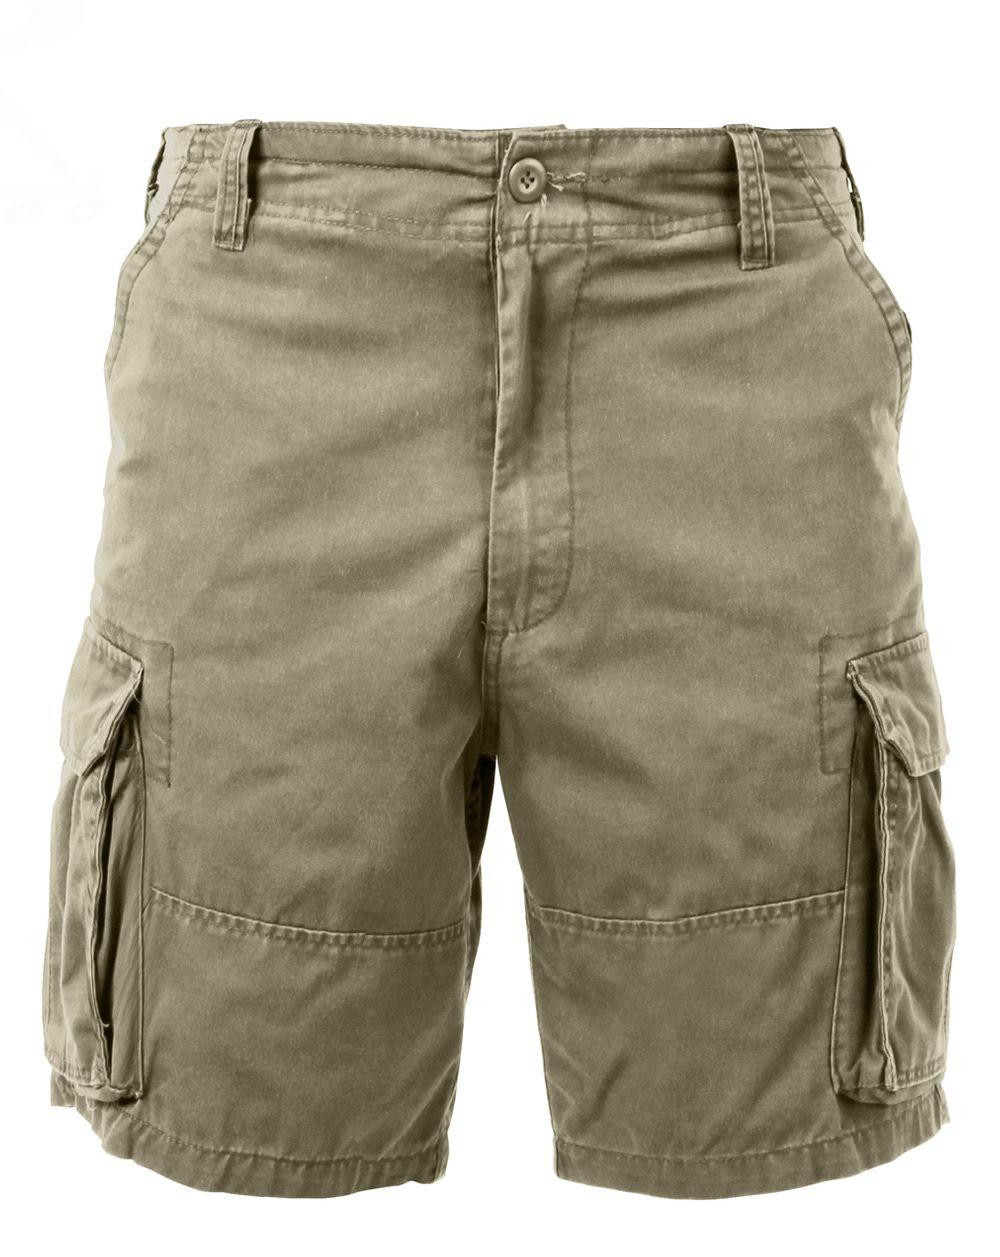 Rothco Cargo shorts (Khaki, 3XL)